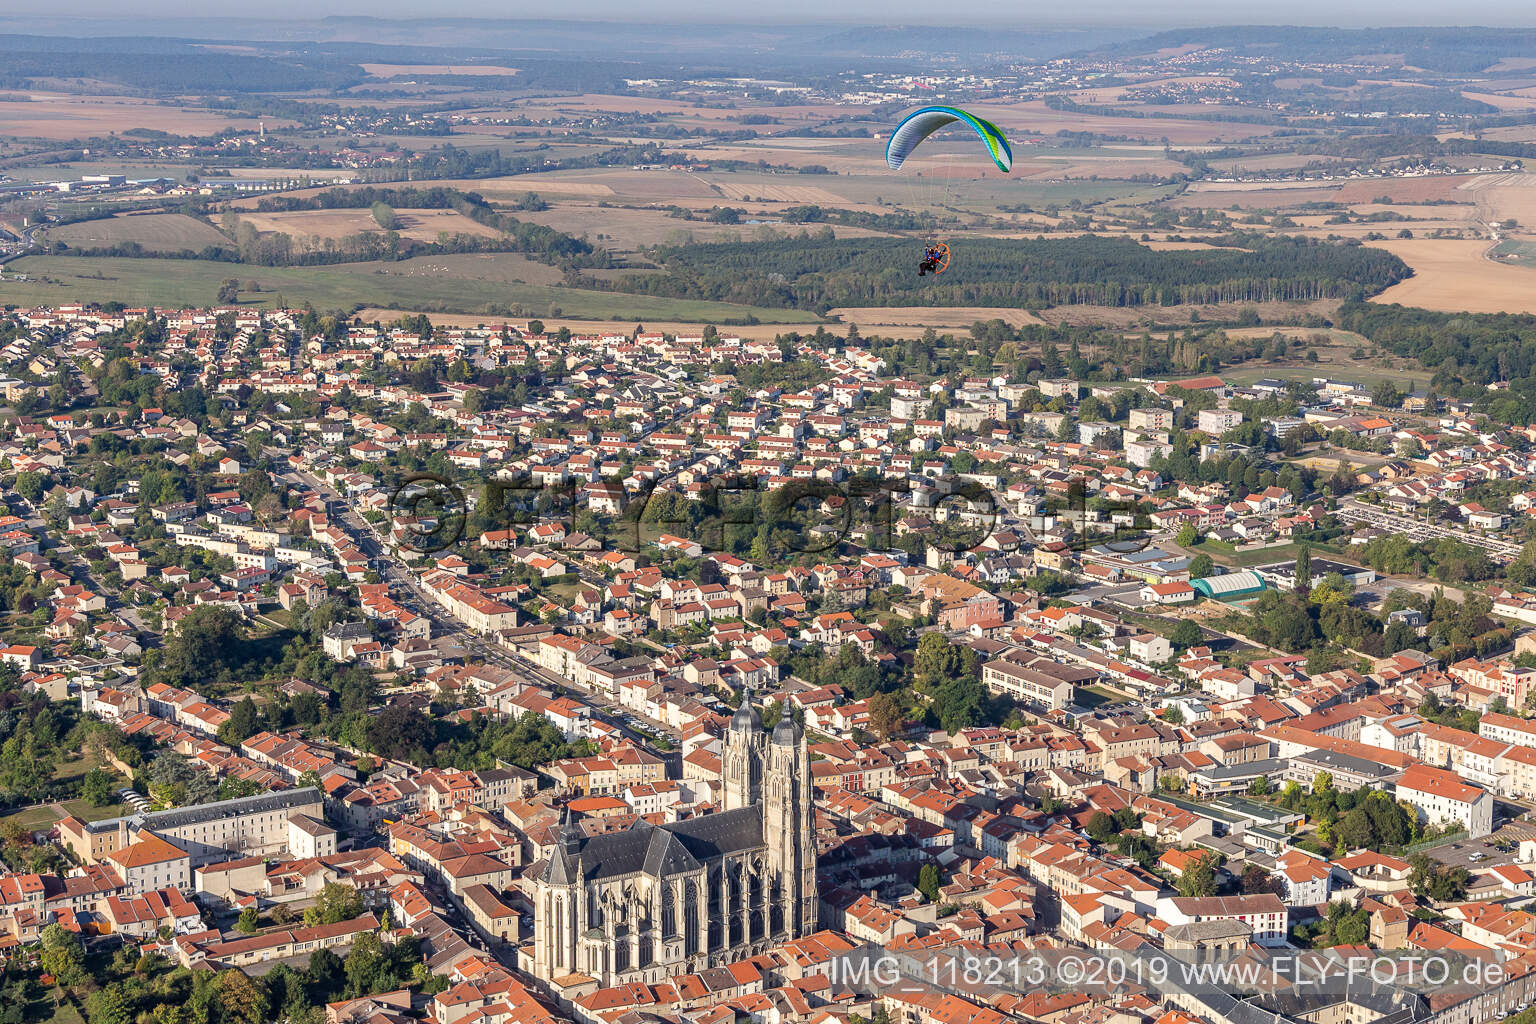 Aerial photograpy of Basilique de Saint-Nicolas-de-Port in Saint-Nicolas-de-Port in the state Meurthe et Moselle, France